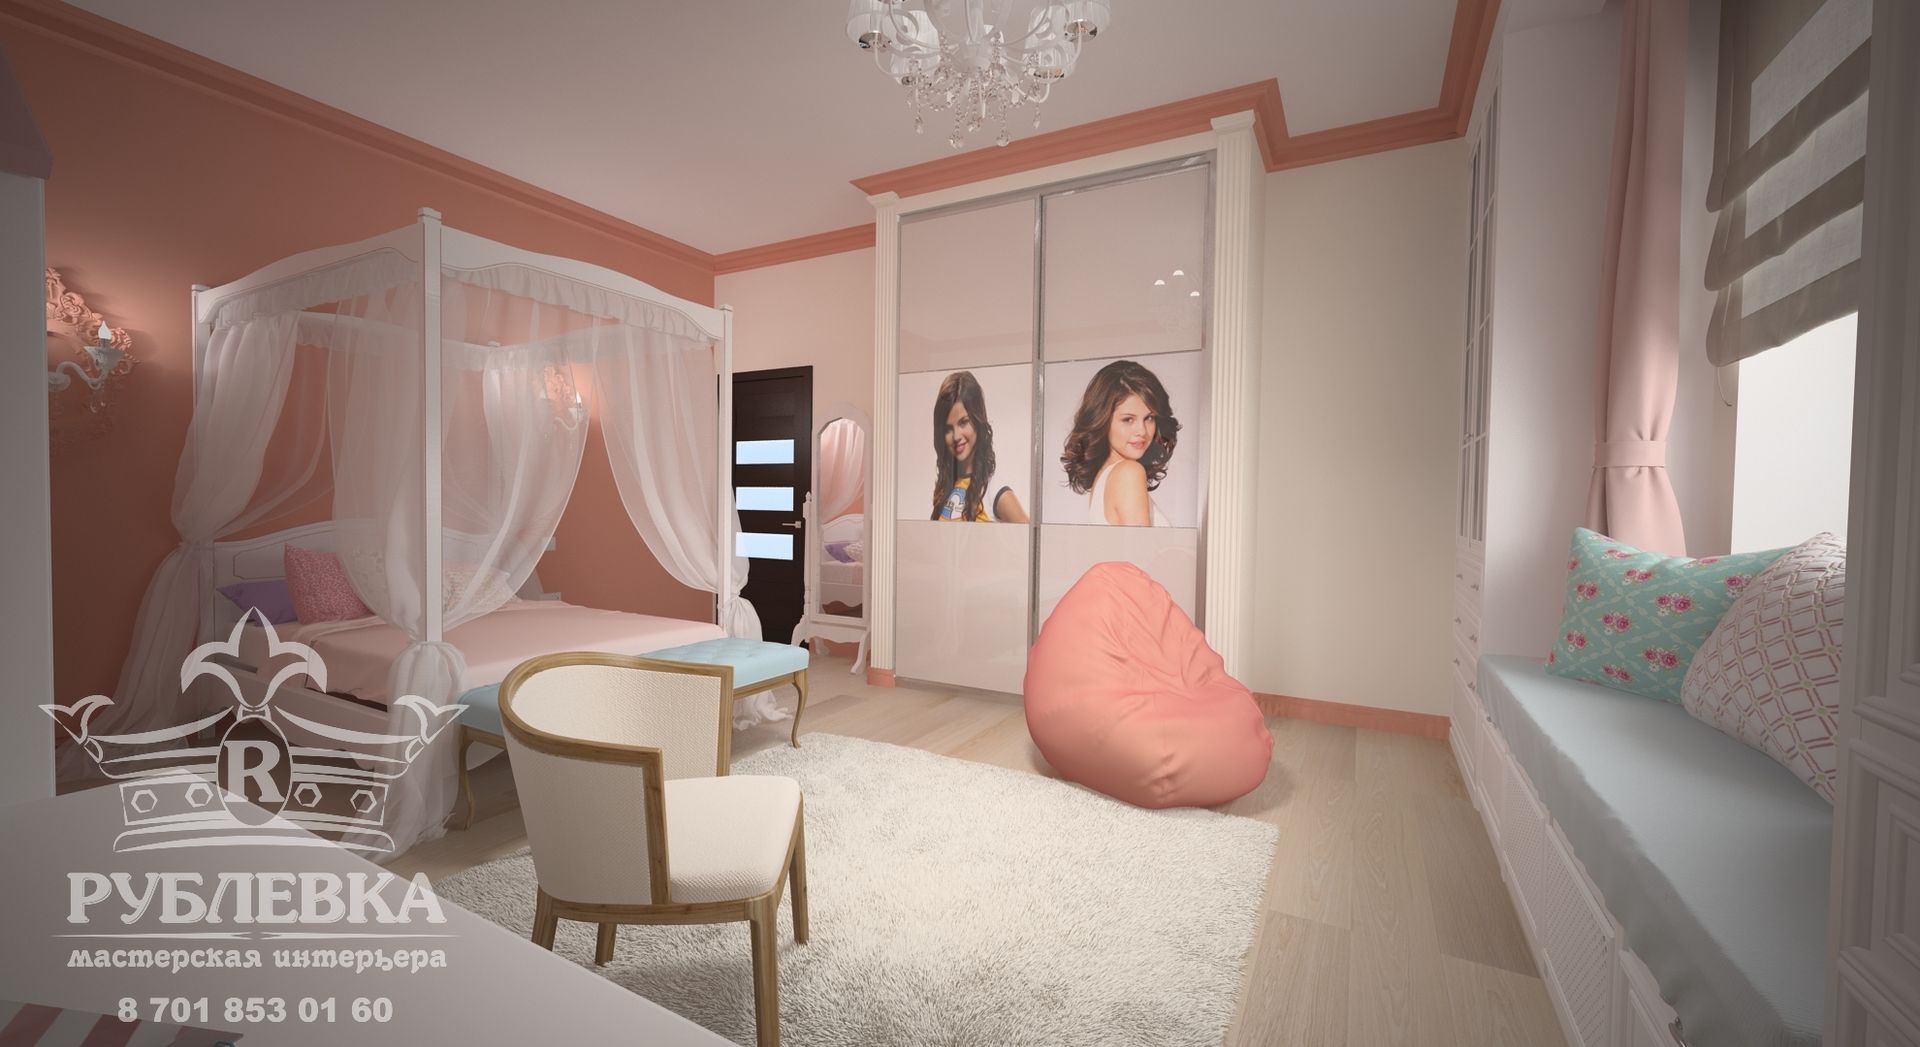 Спальня для девочки мастерская интерьера РУБЛЕВКА / workshop interior RUBLEVKA Детская комнатa в классическом стиле детская,спальня,комната,кровать с балдахином,встроенный шкаф